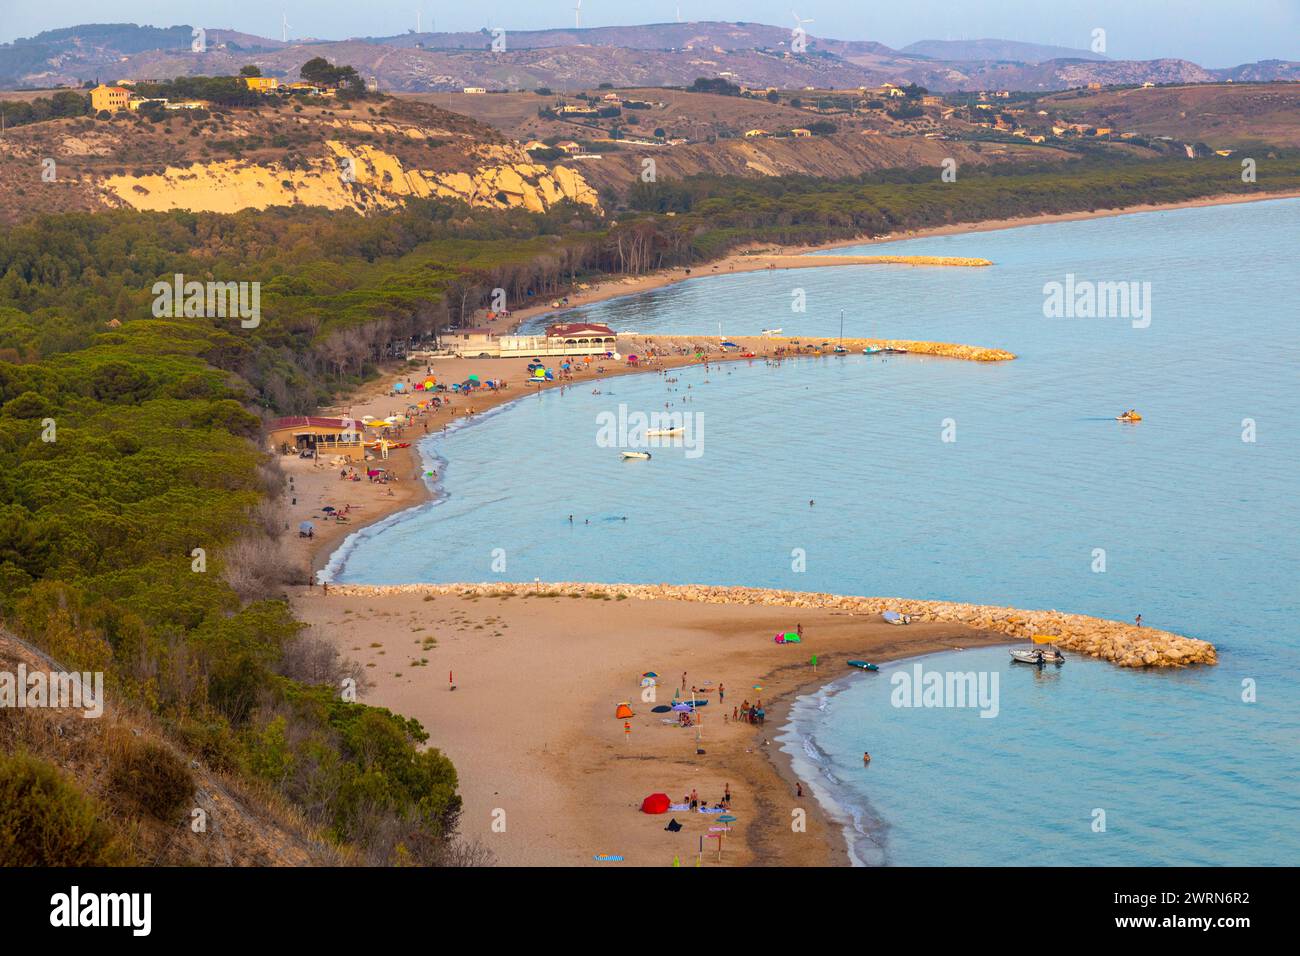 Spiaggia di Eraclea Minoa, vue en haut angle de la plage, Sicile, Italie, Méditerranée, Europe Copyright : JohnxGuidi 1237-647 Banque D'Images